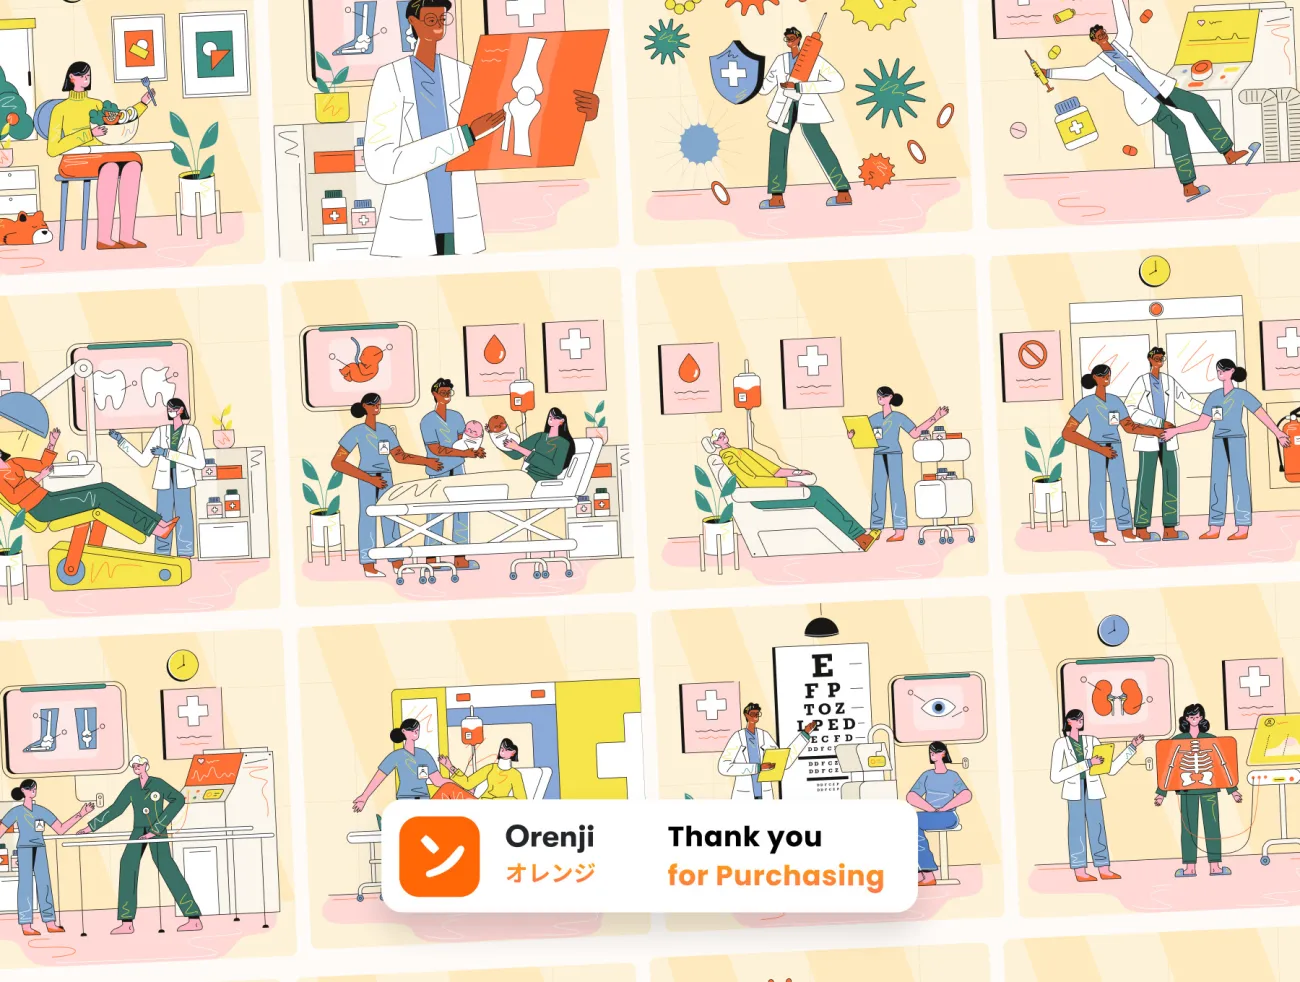 医疗健康矢量插图设计素材 Hospital & Health Illustration ai格式-人物插画、场景插画、插画、插画功能、教育医疗、概念创意、状态页、趣味漫画、运动健身-到位啦UI